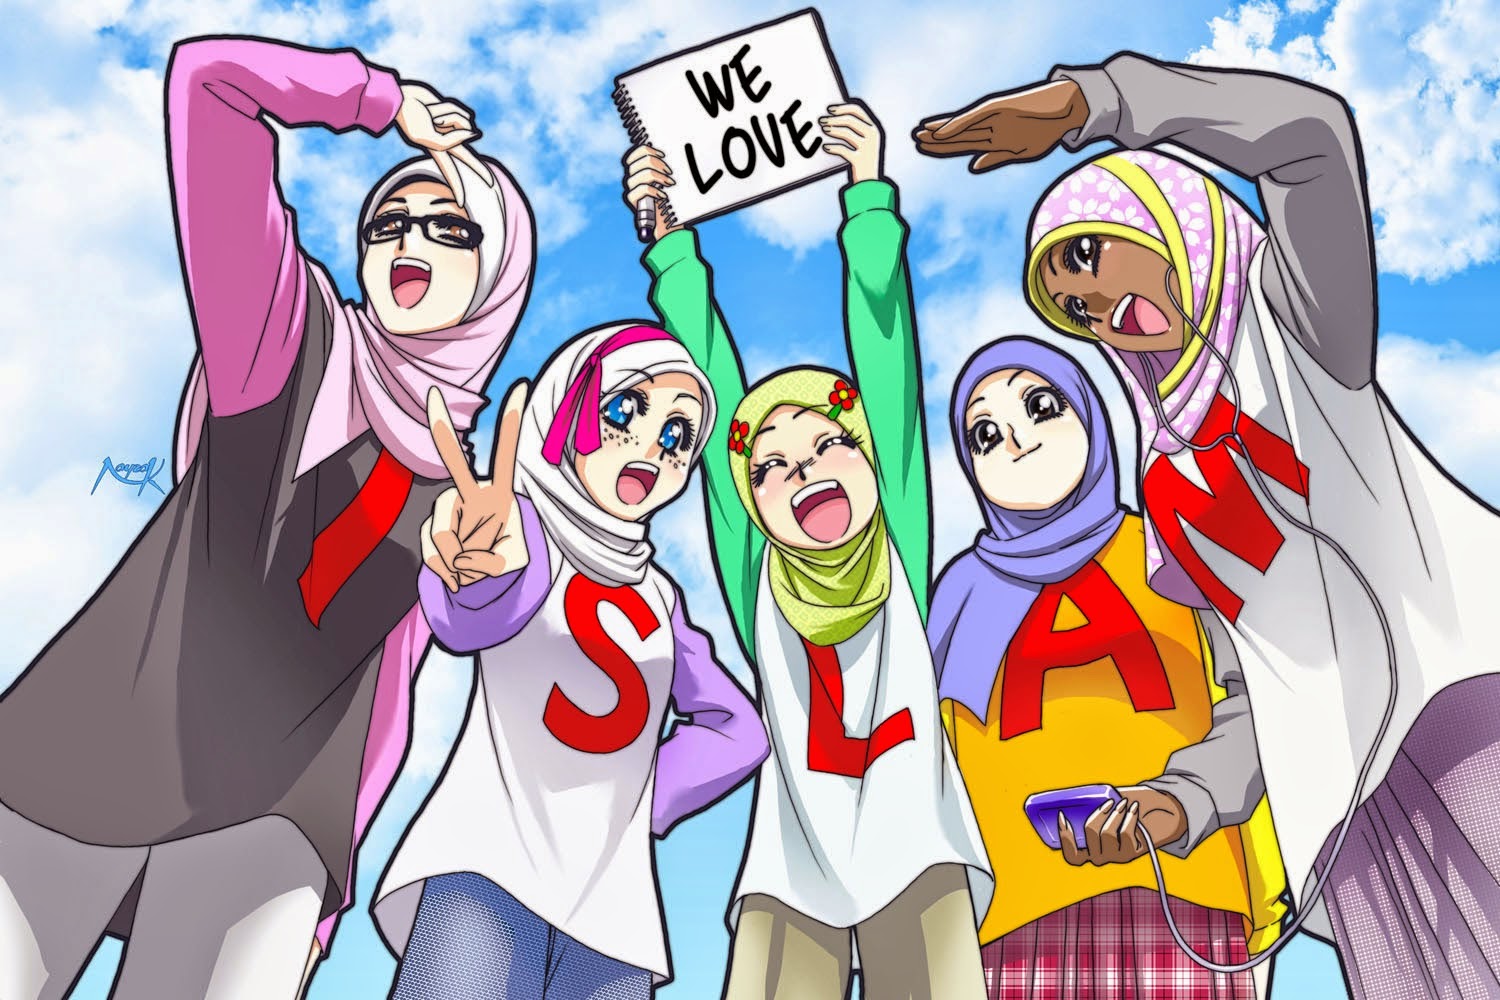 Koleksi Gambar Kartun Ana Muslim Dan Muslimah